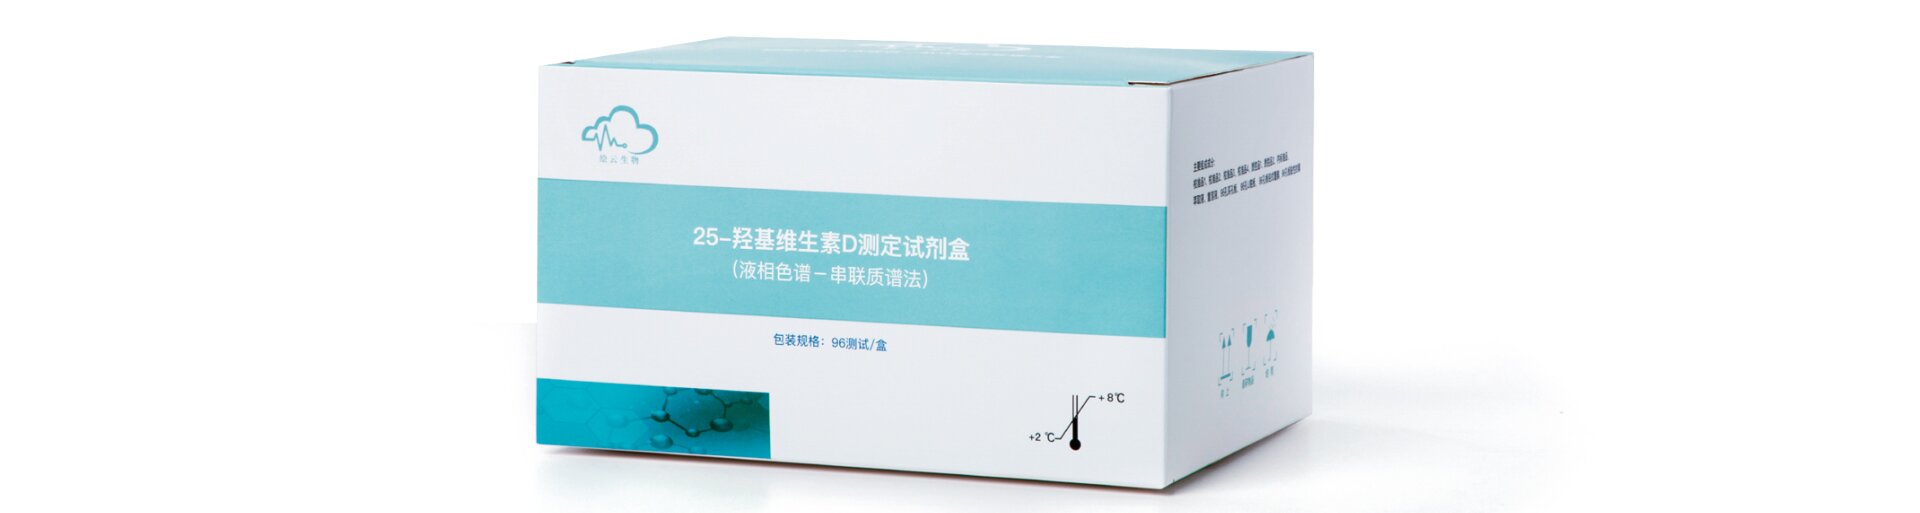 绘云生物维生素D测定试剂盒获批二类医疗器械注册证